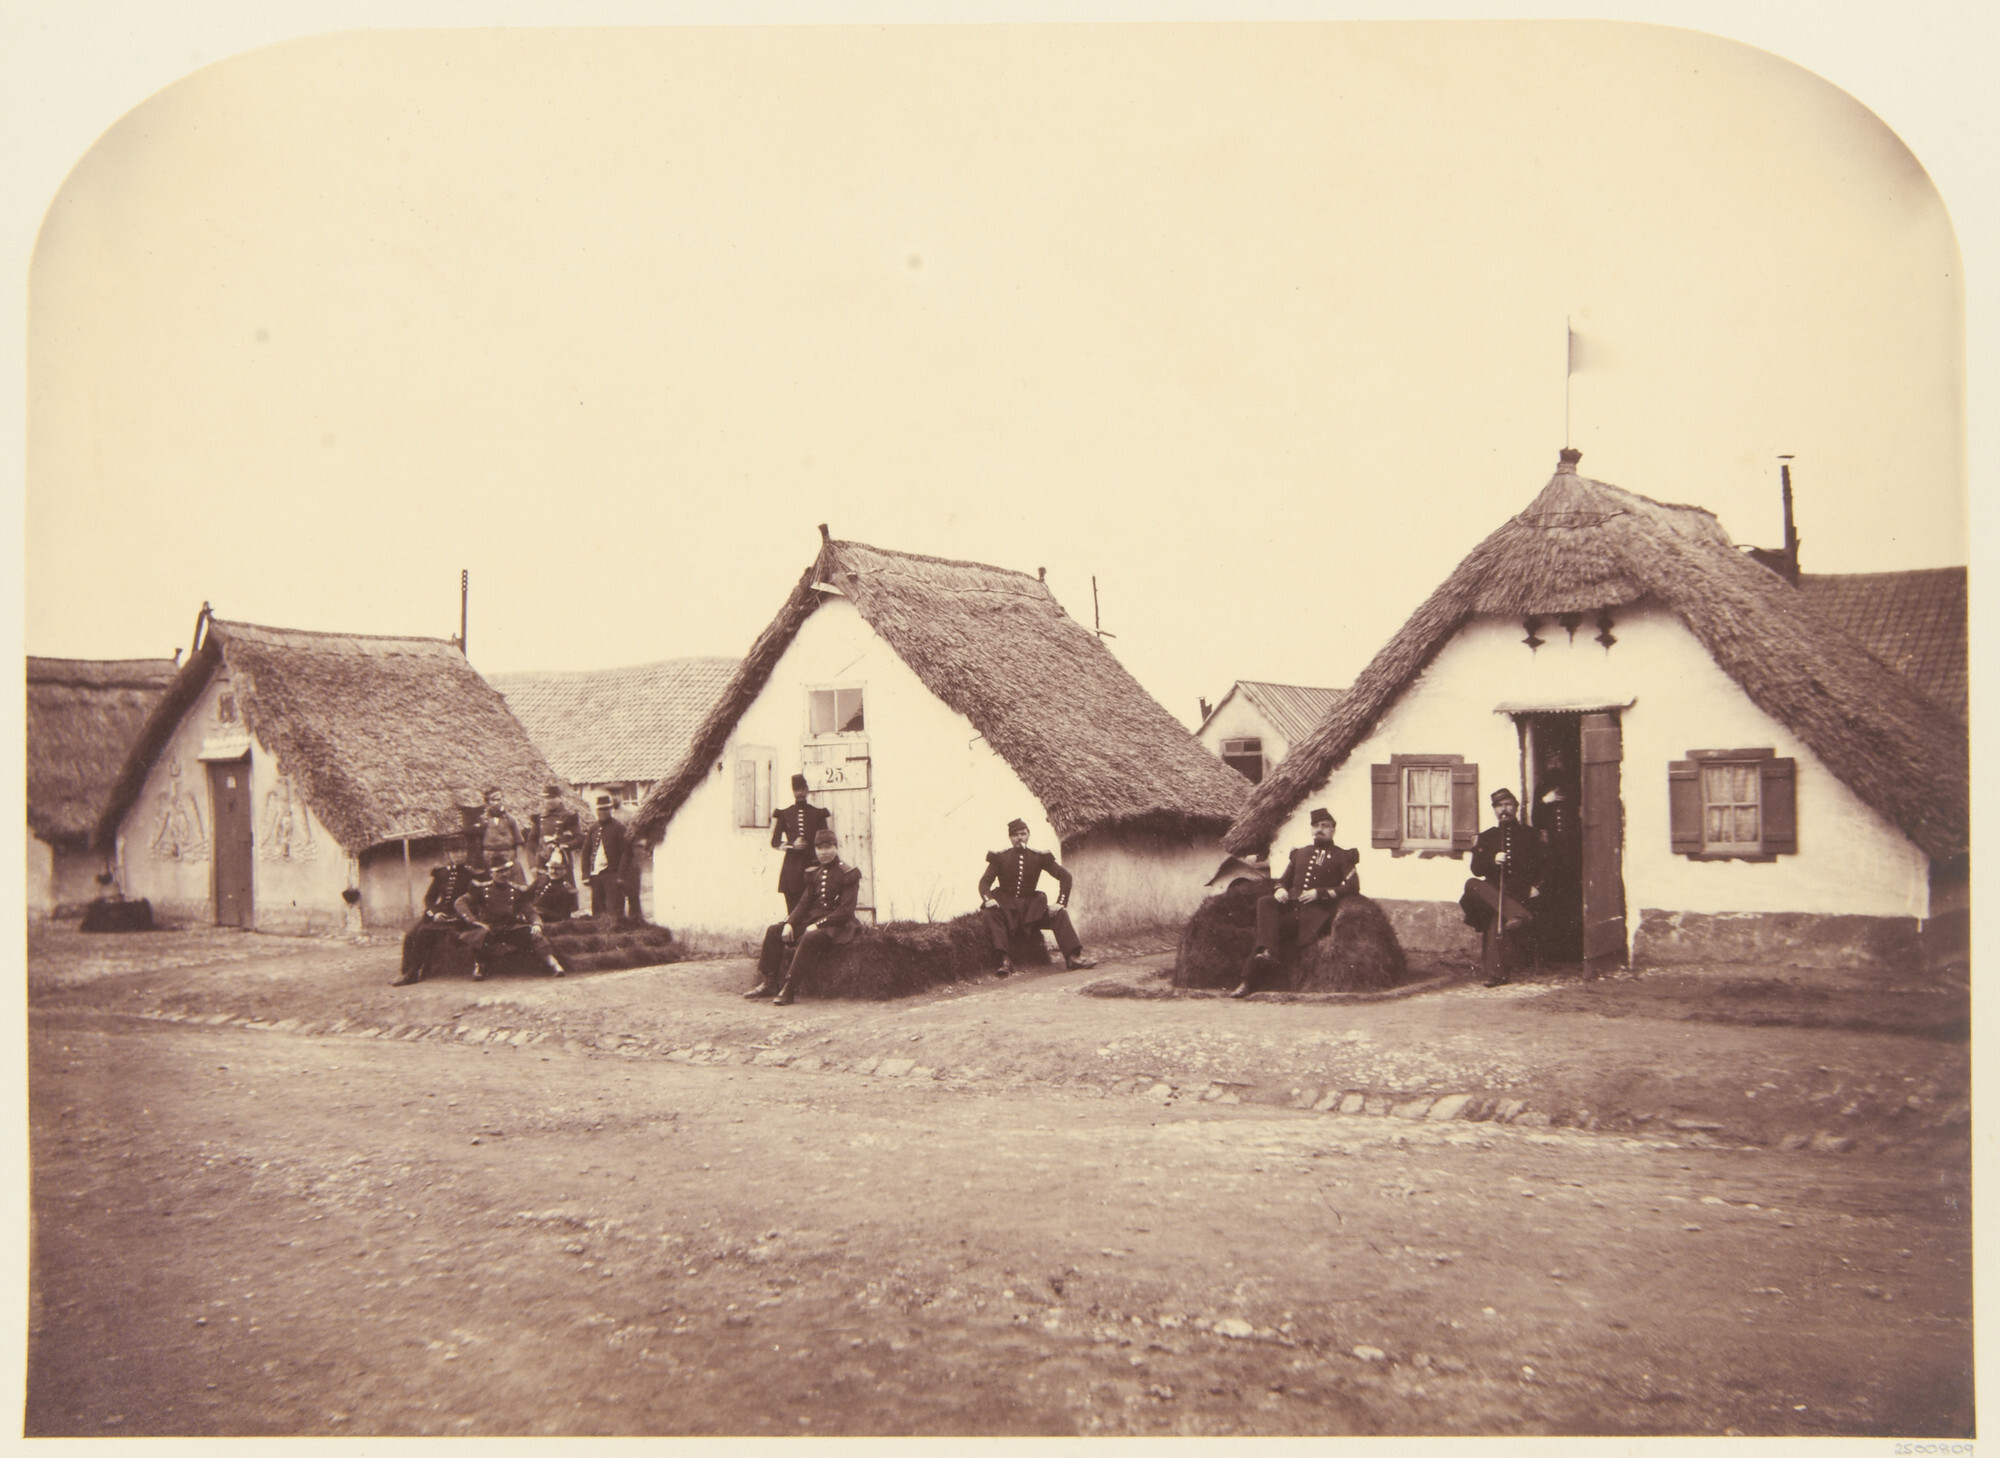 Капитанские хижины, Булонь, 1857. Фотограф Чарльз Терстон Томпсон